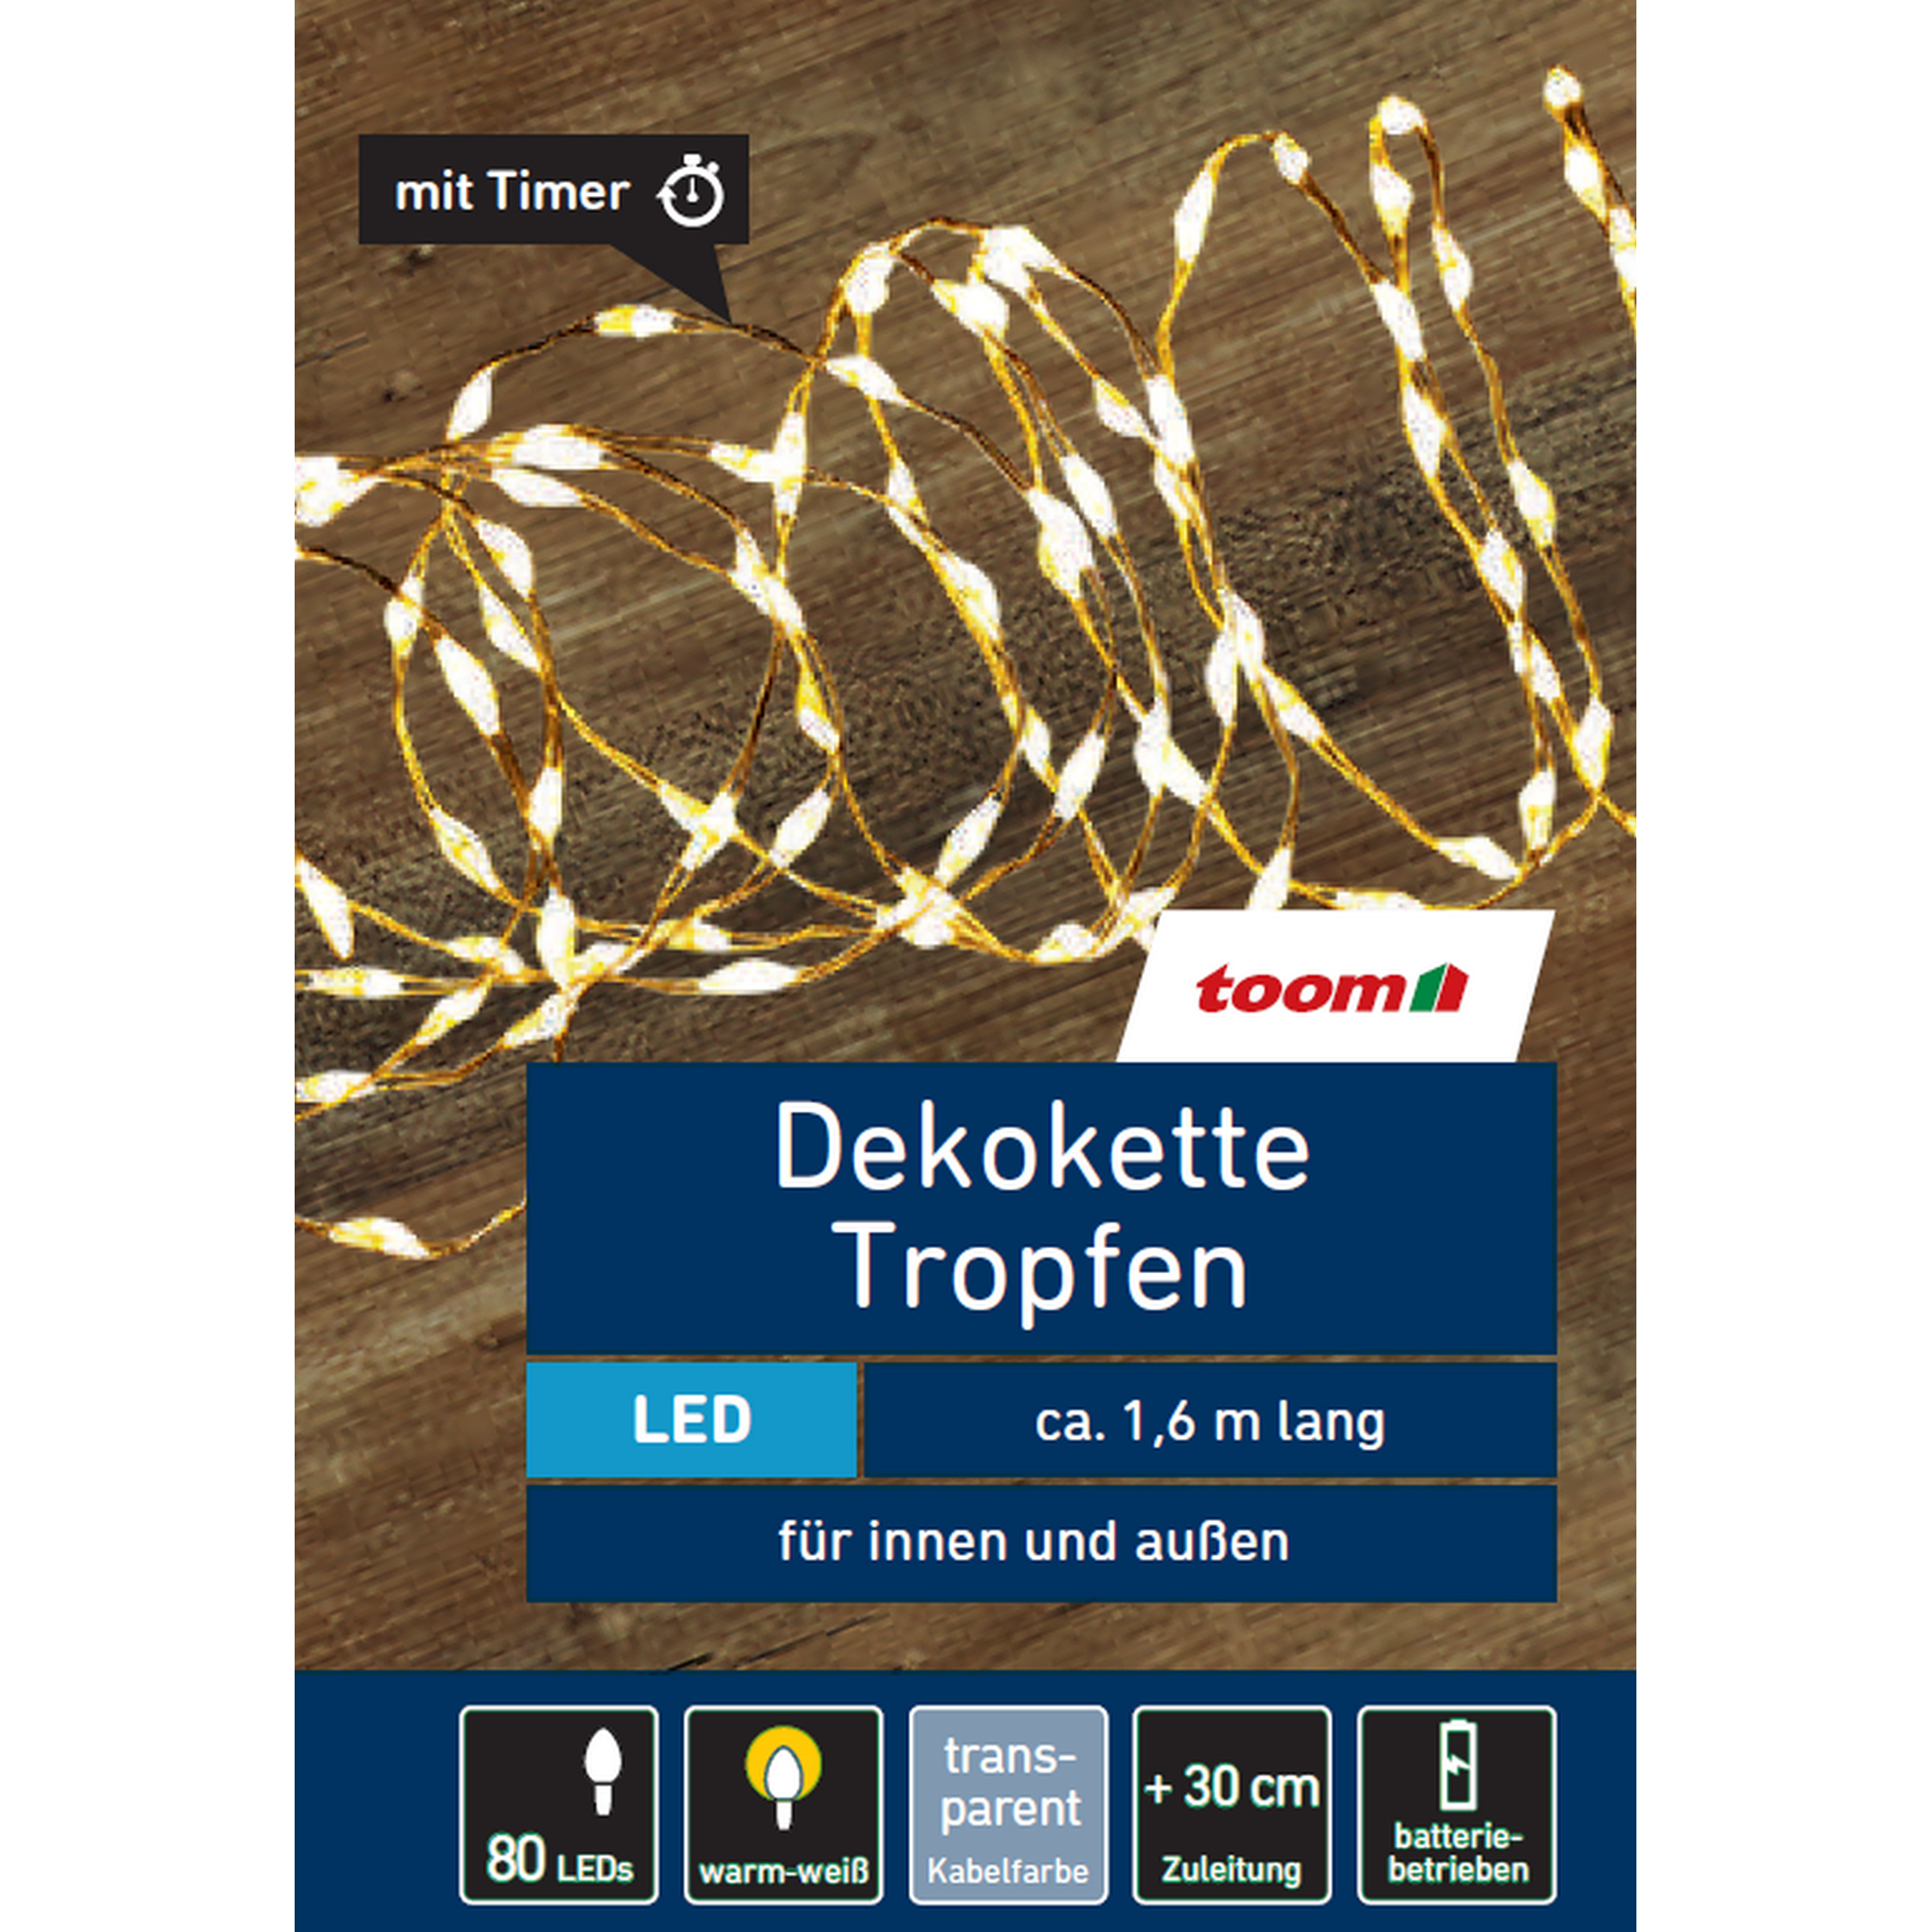 LED-Lichterkette 'Tropfen' 80 LEDs warmweiß 160 cm + product picture